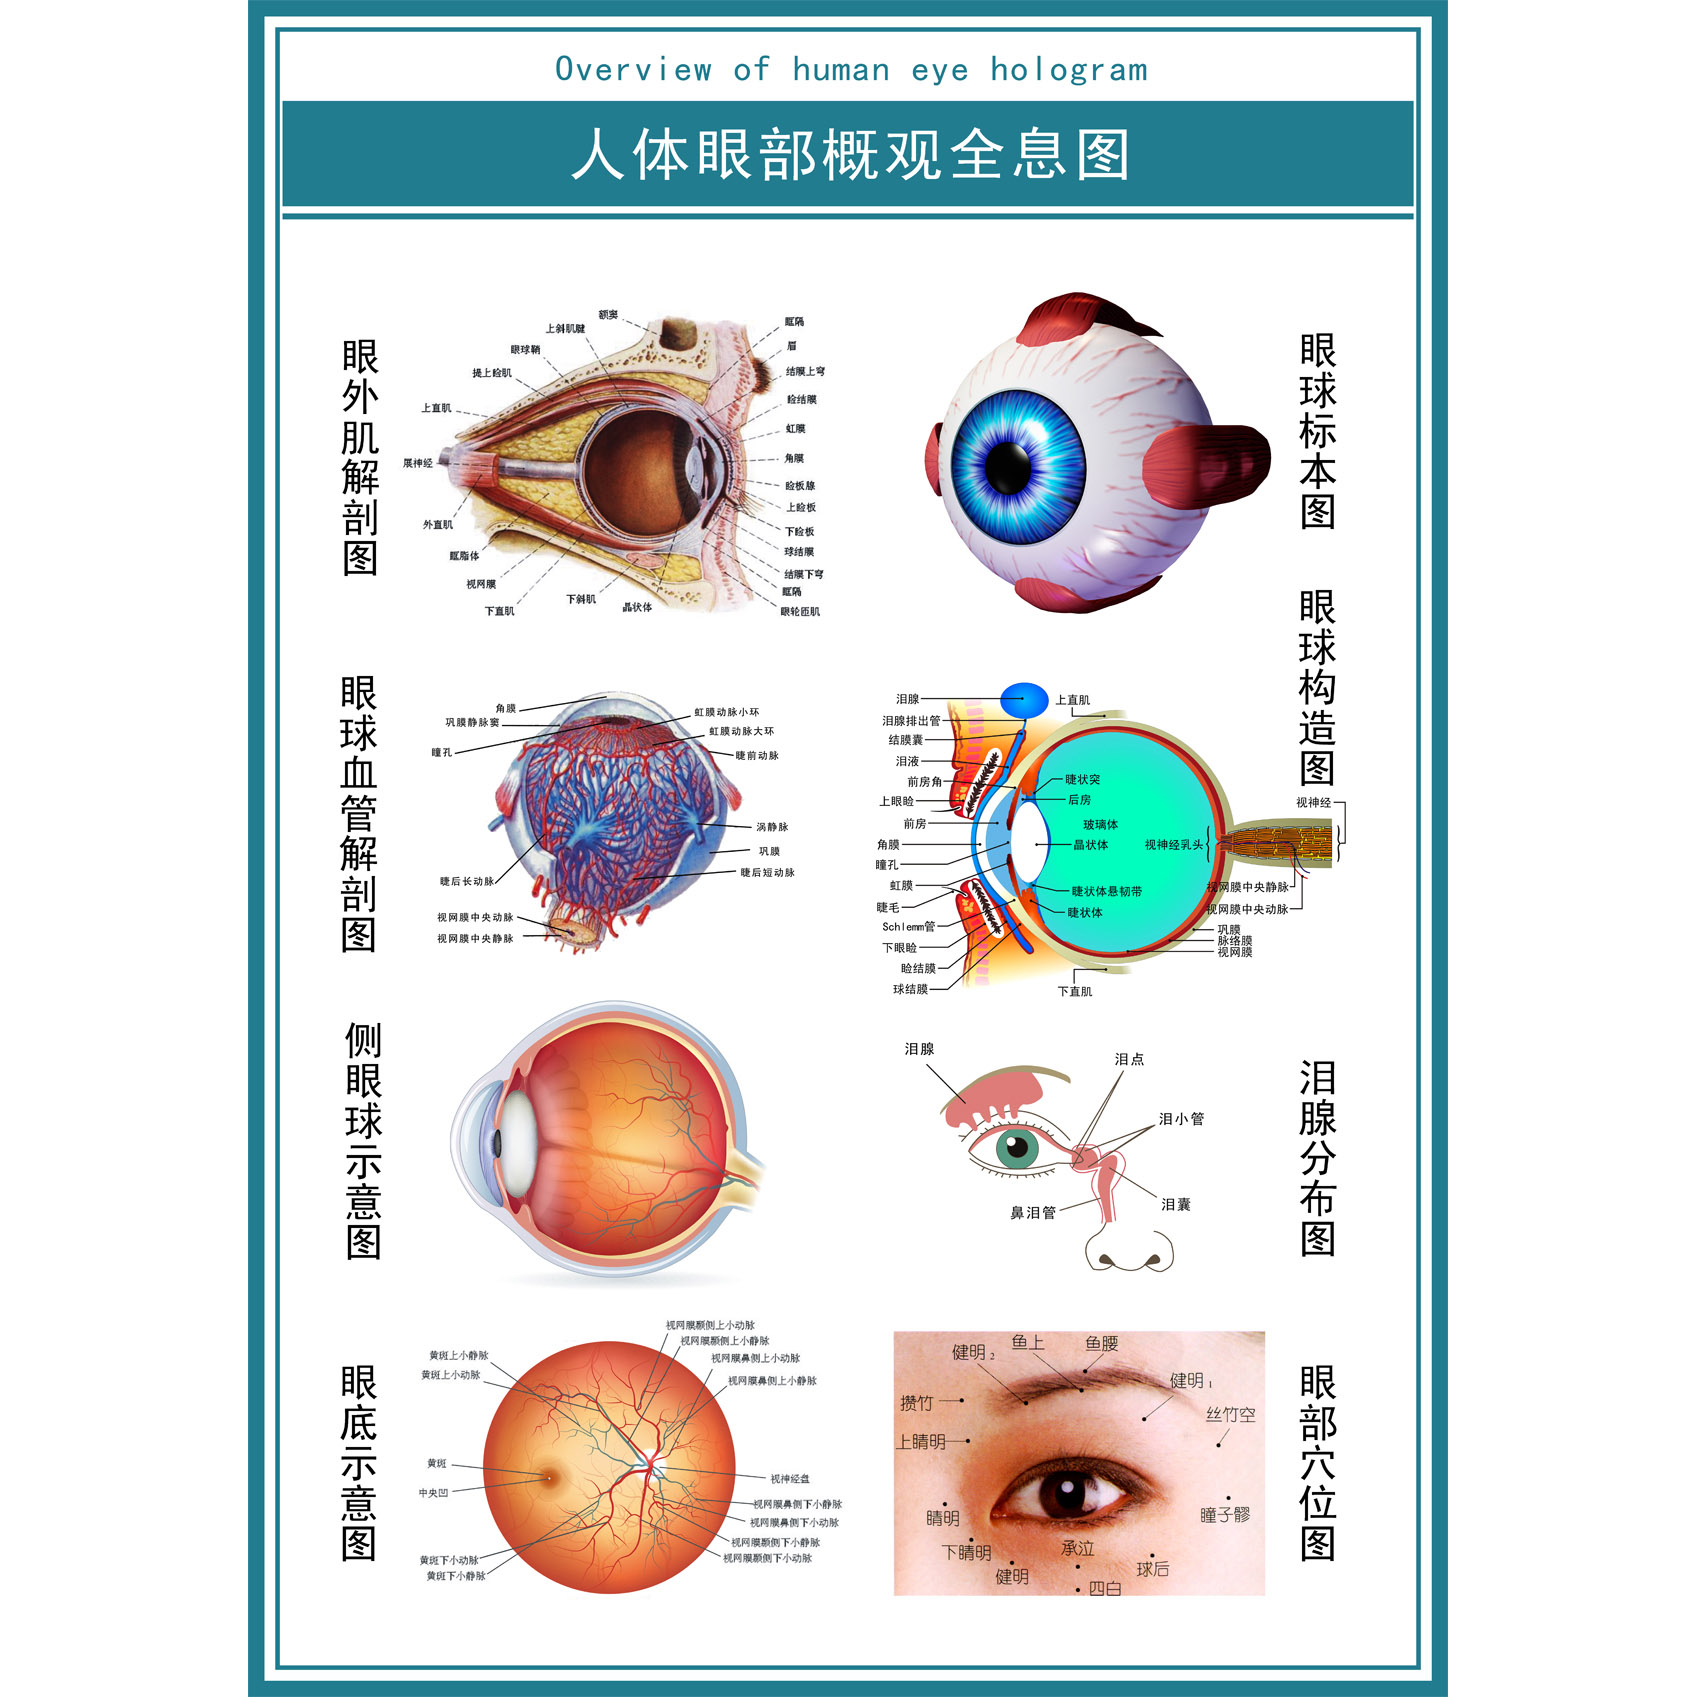 眼球解剖图泪腺分布图眼部肌肉血管结构图全息图医院眼科宣传海报